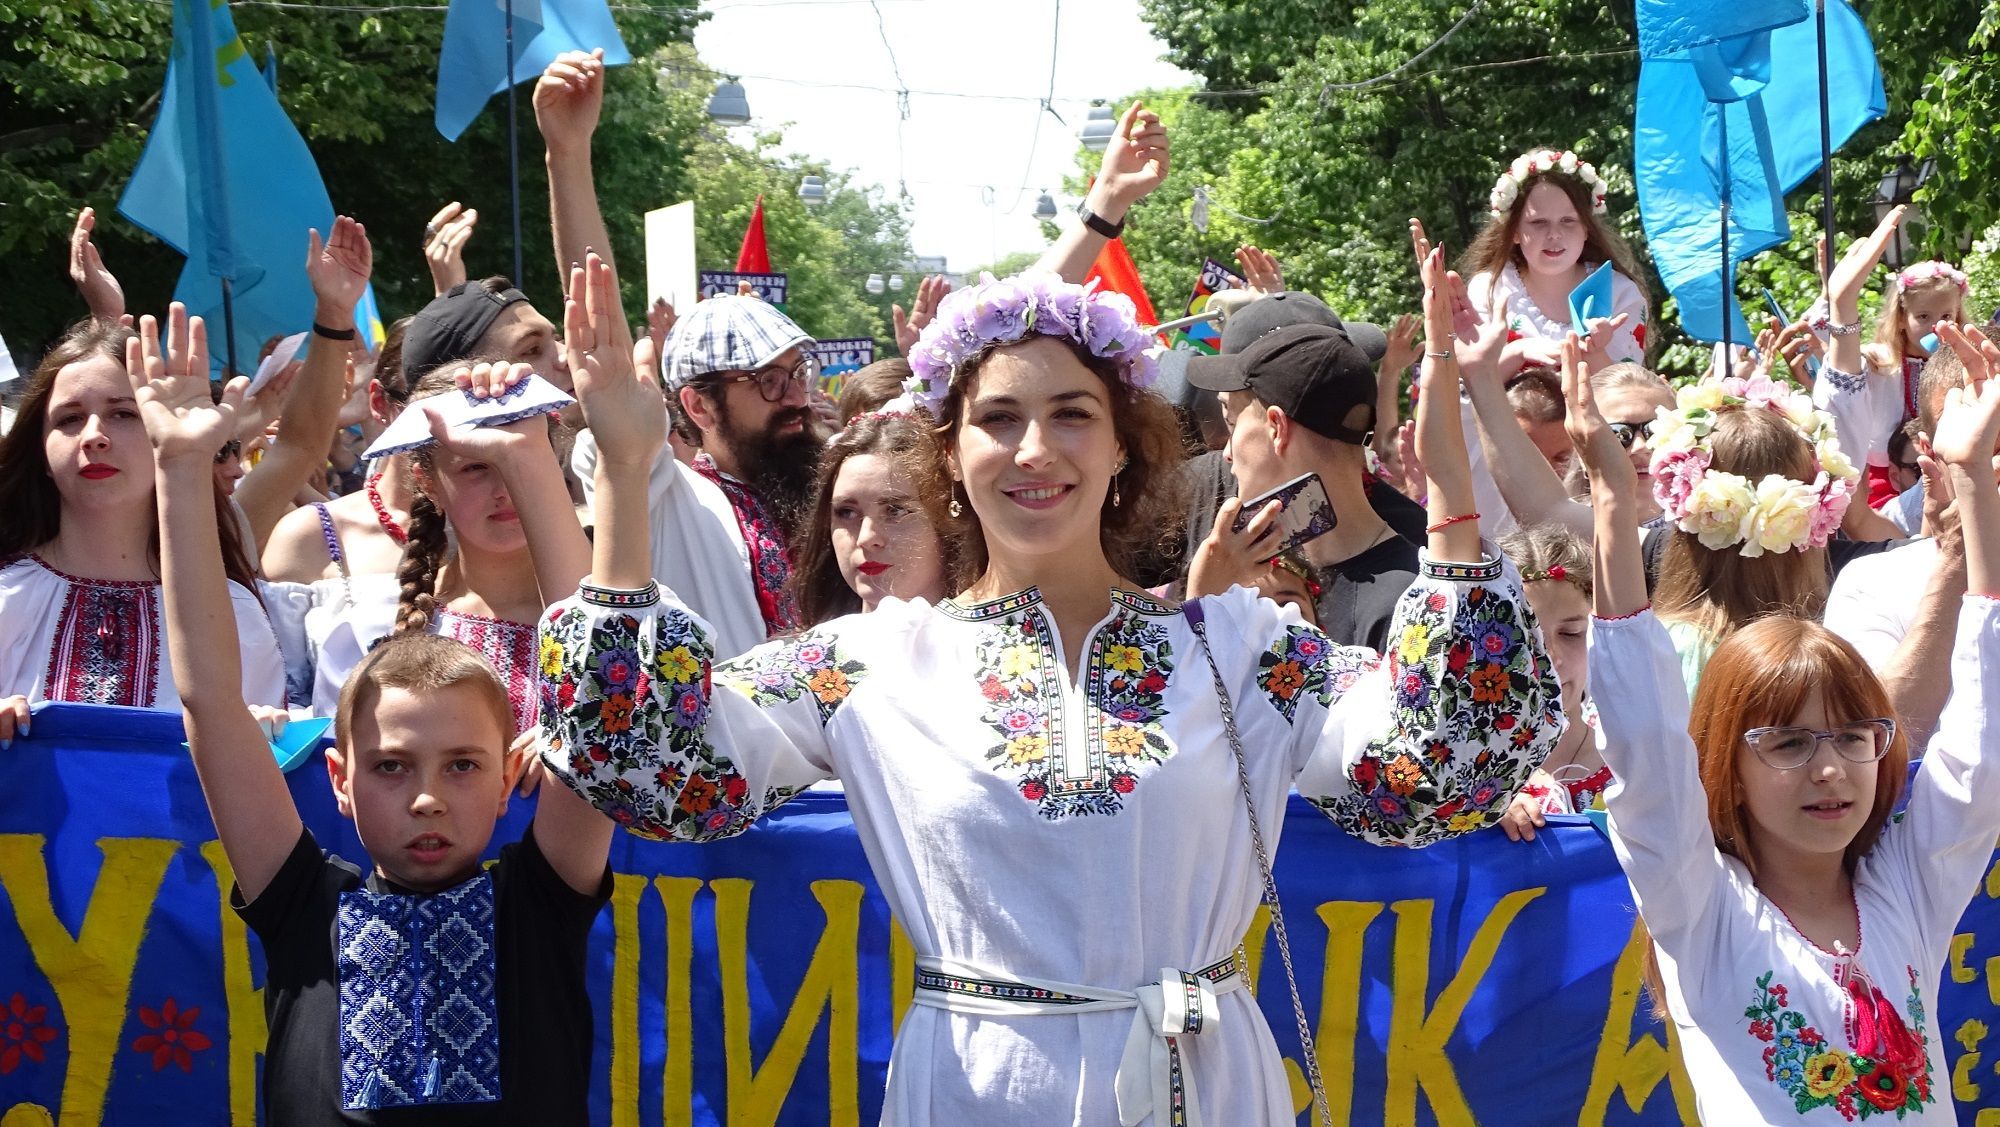 Тисячі українців взяли участь у Мегамарші вишиванок в Одесі: вражаючі фото